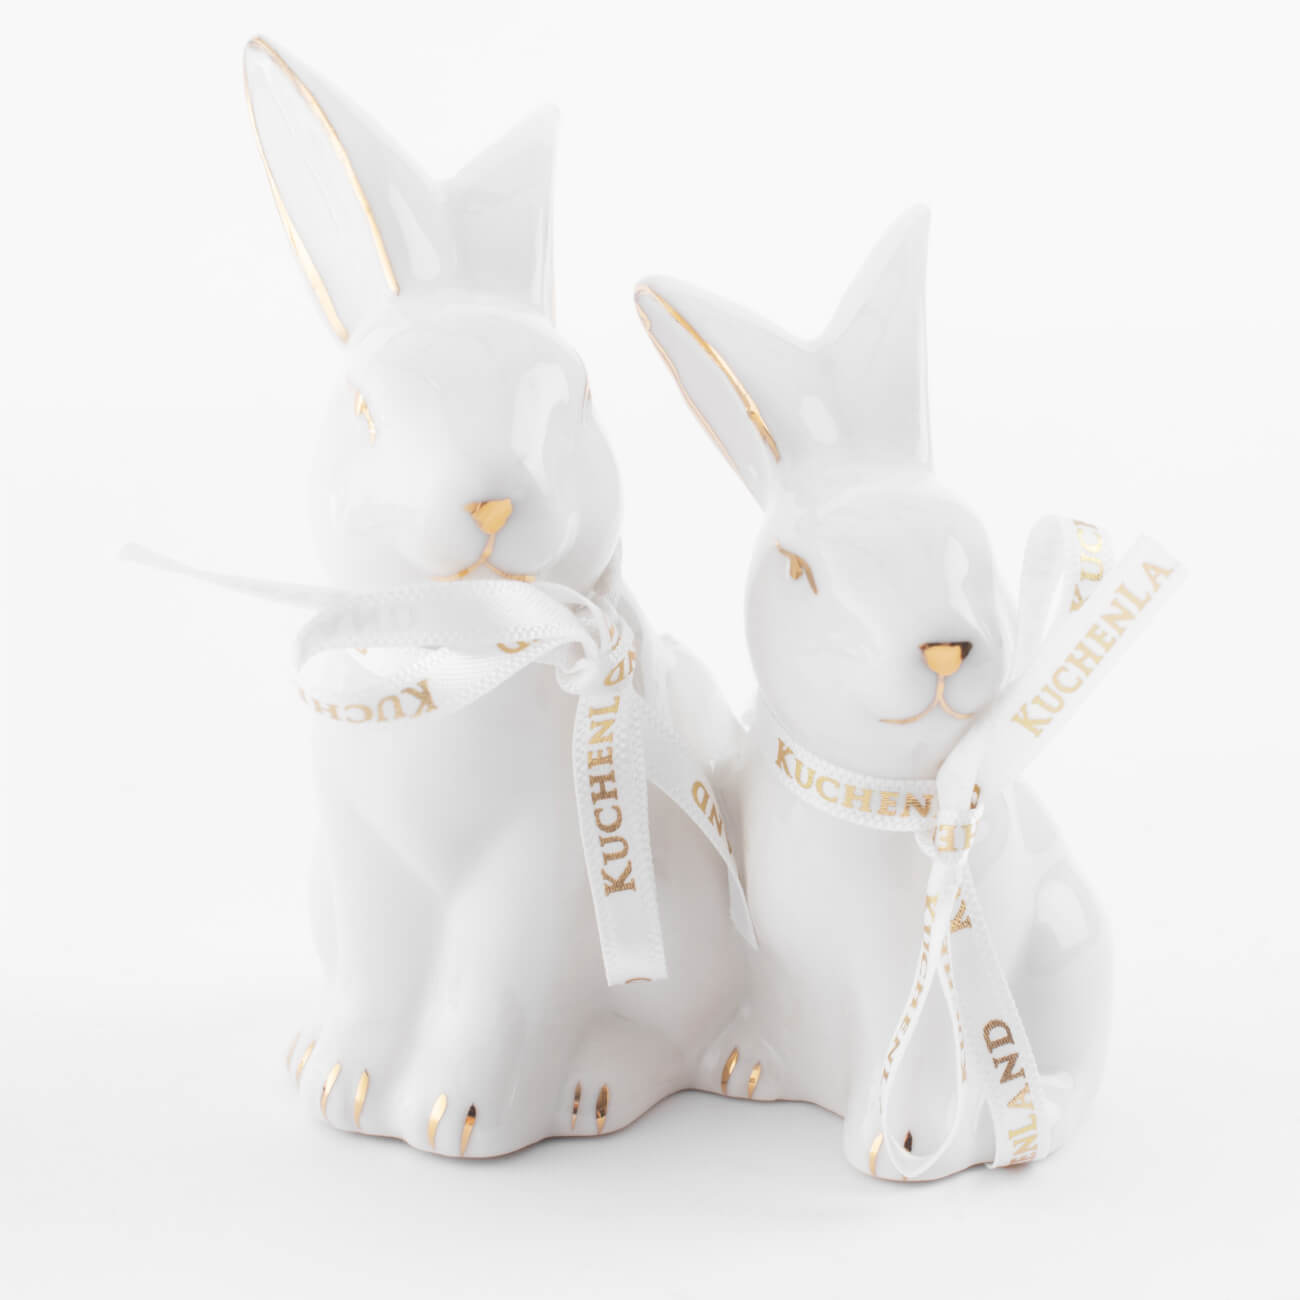 Статуэтка, 9 см, фарфор P, бело-золотистая, Кролики, Easter gold набор для соли и перца 10 см фарфор p белый кролики с ами pure easter